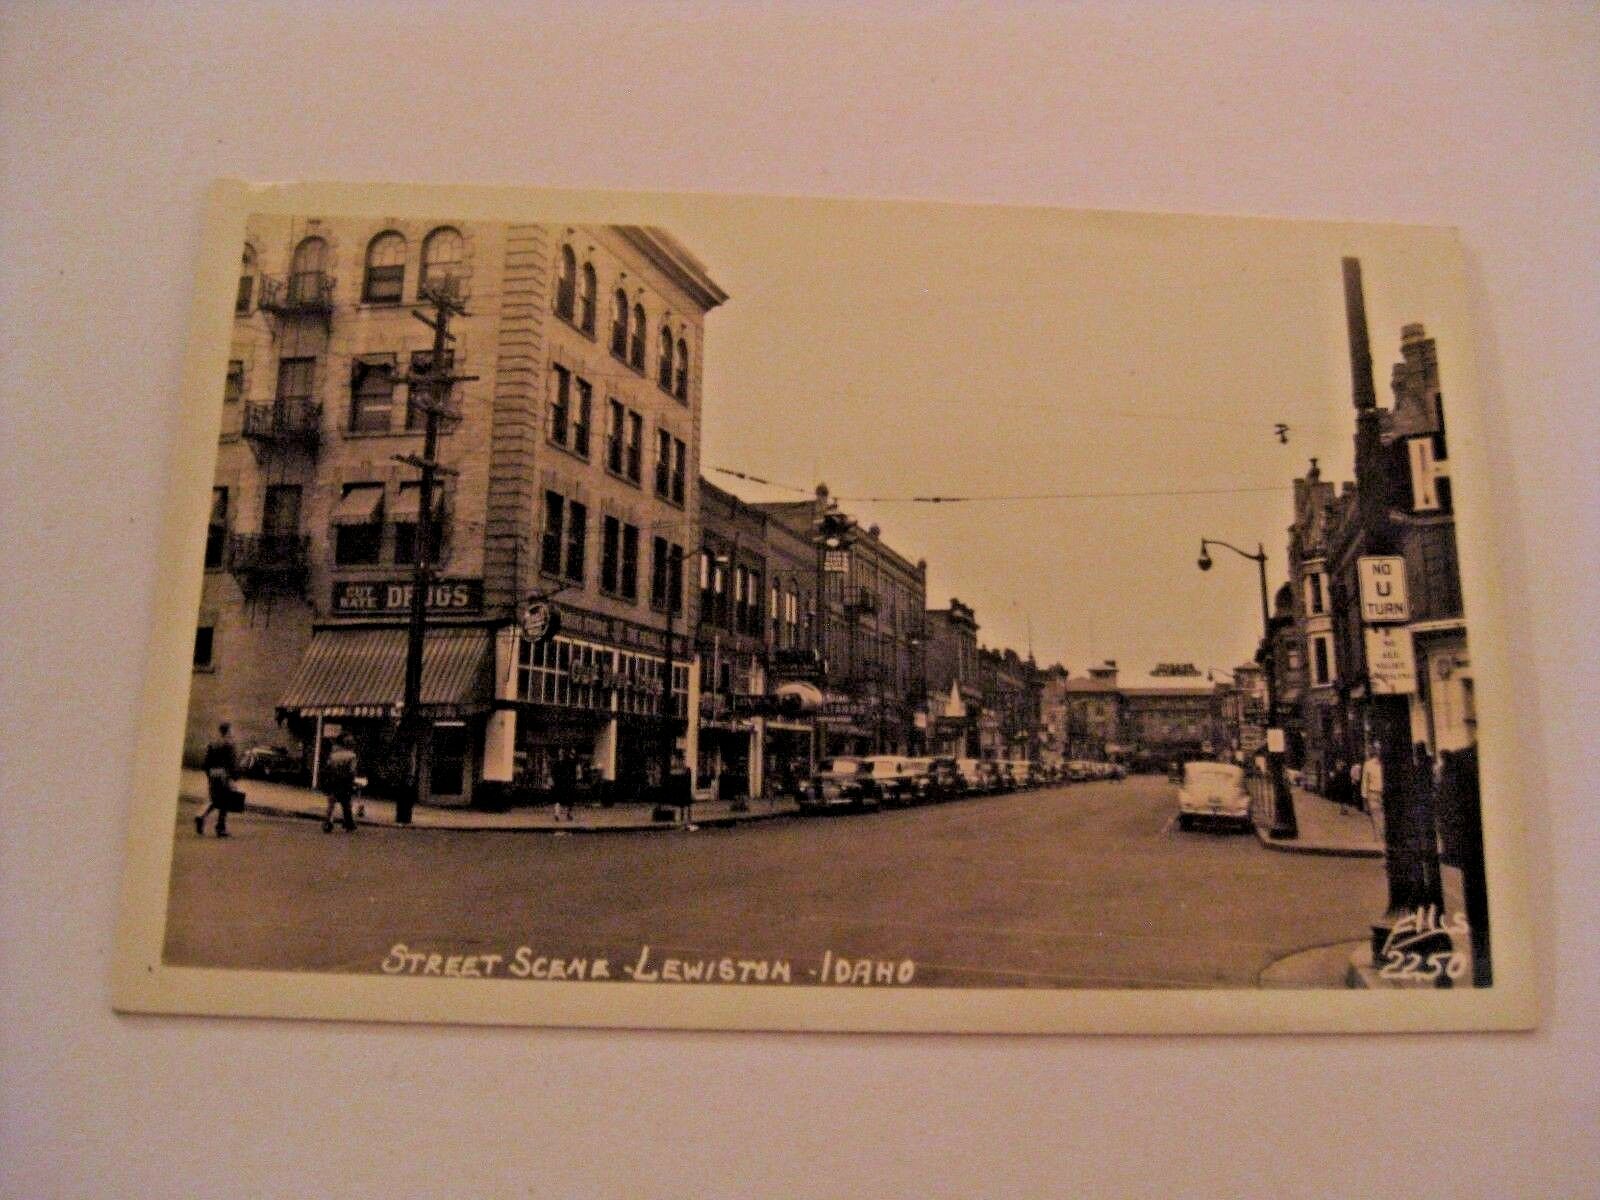 Vintage Street Scene Lewiston Idaho Cut Rate Drugs Building Real Photo Postcard